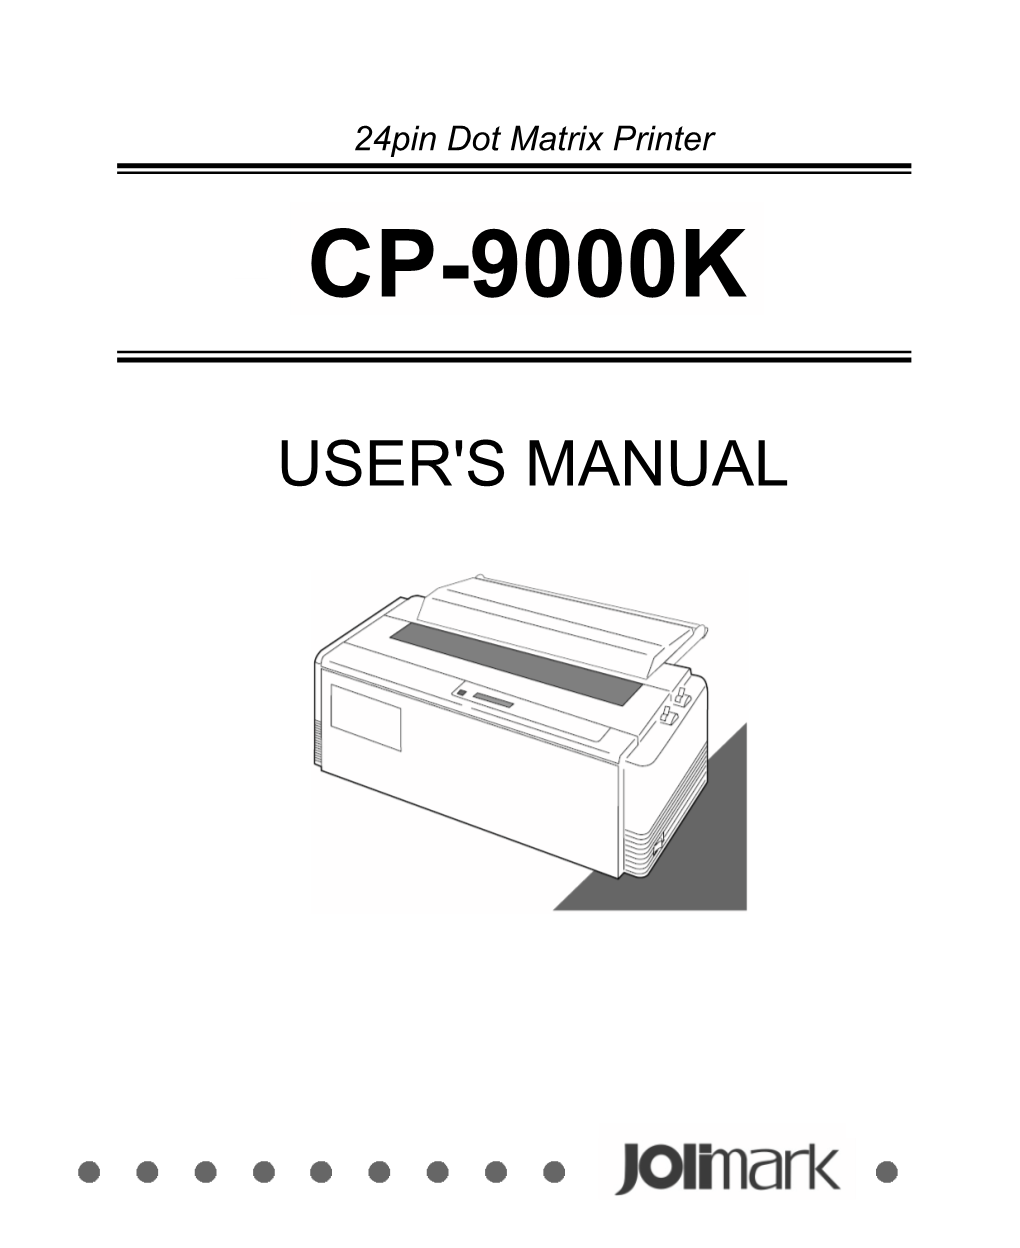 Jolimark CP-9000K User's Manual V1.01